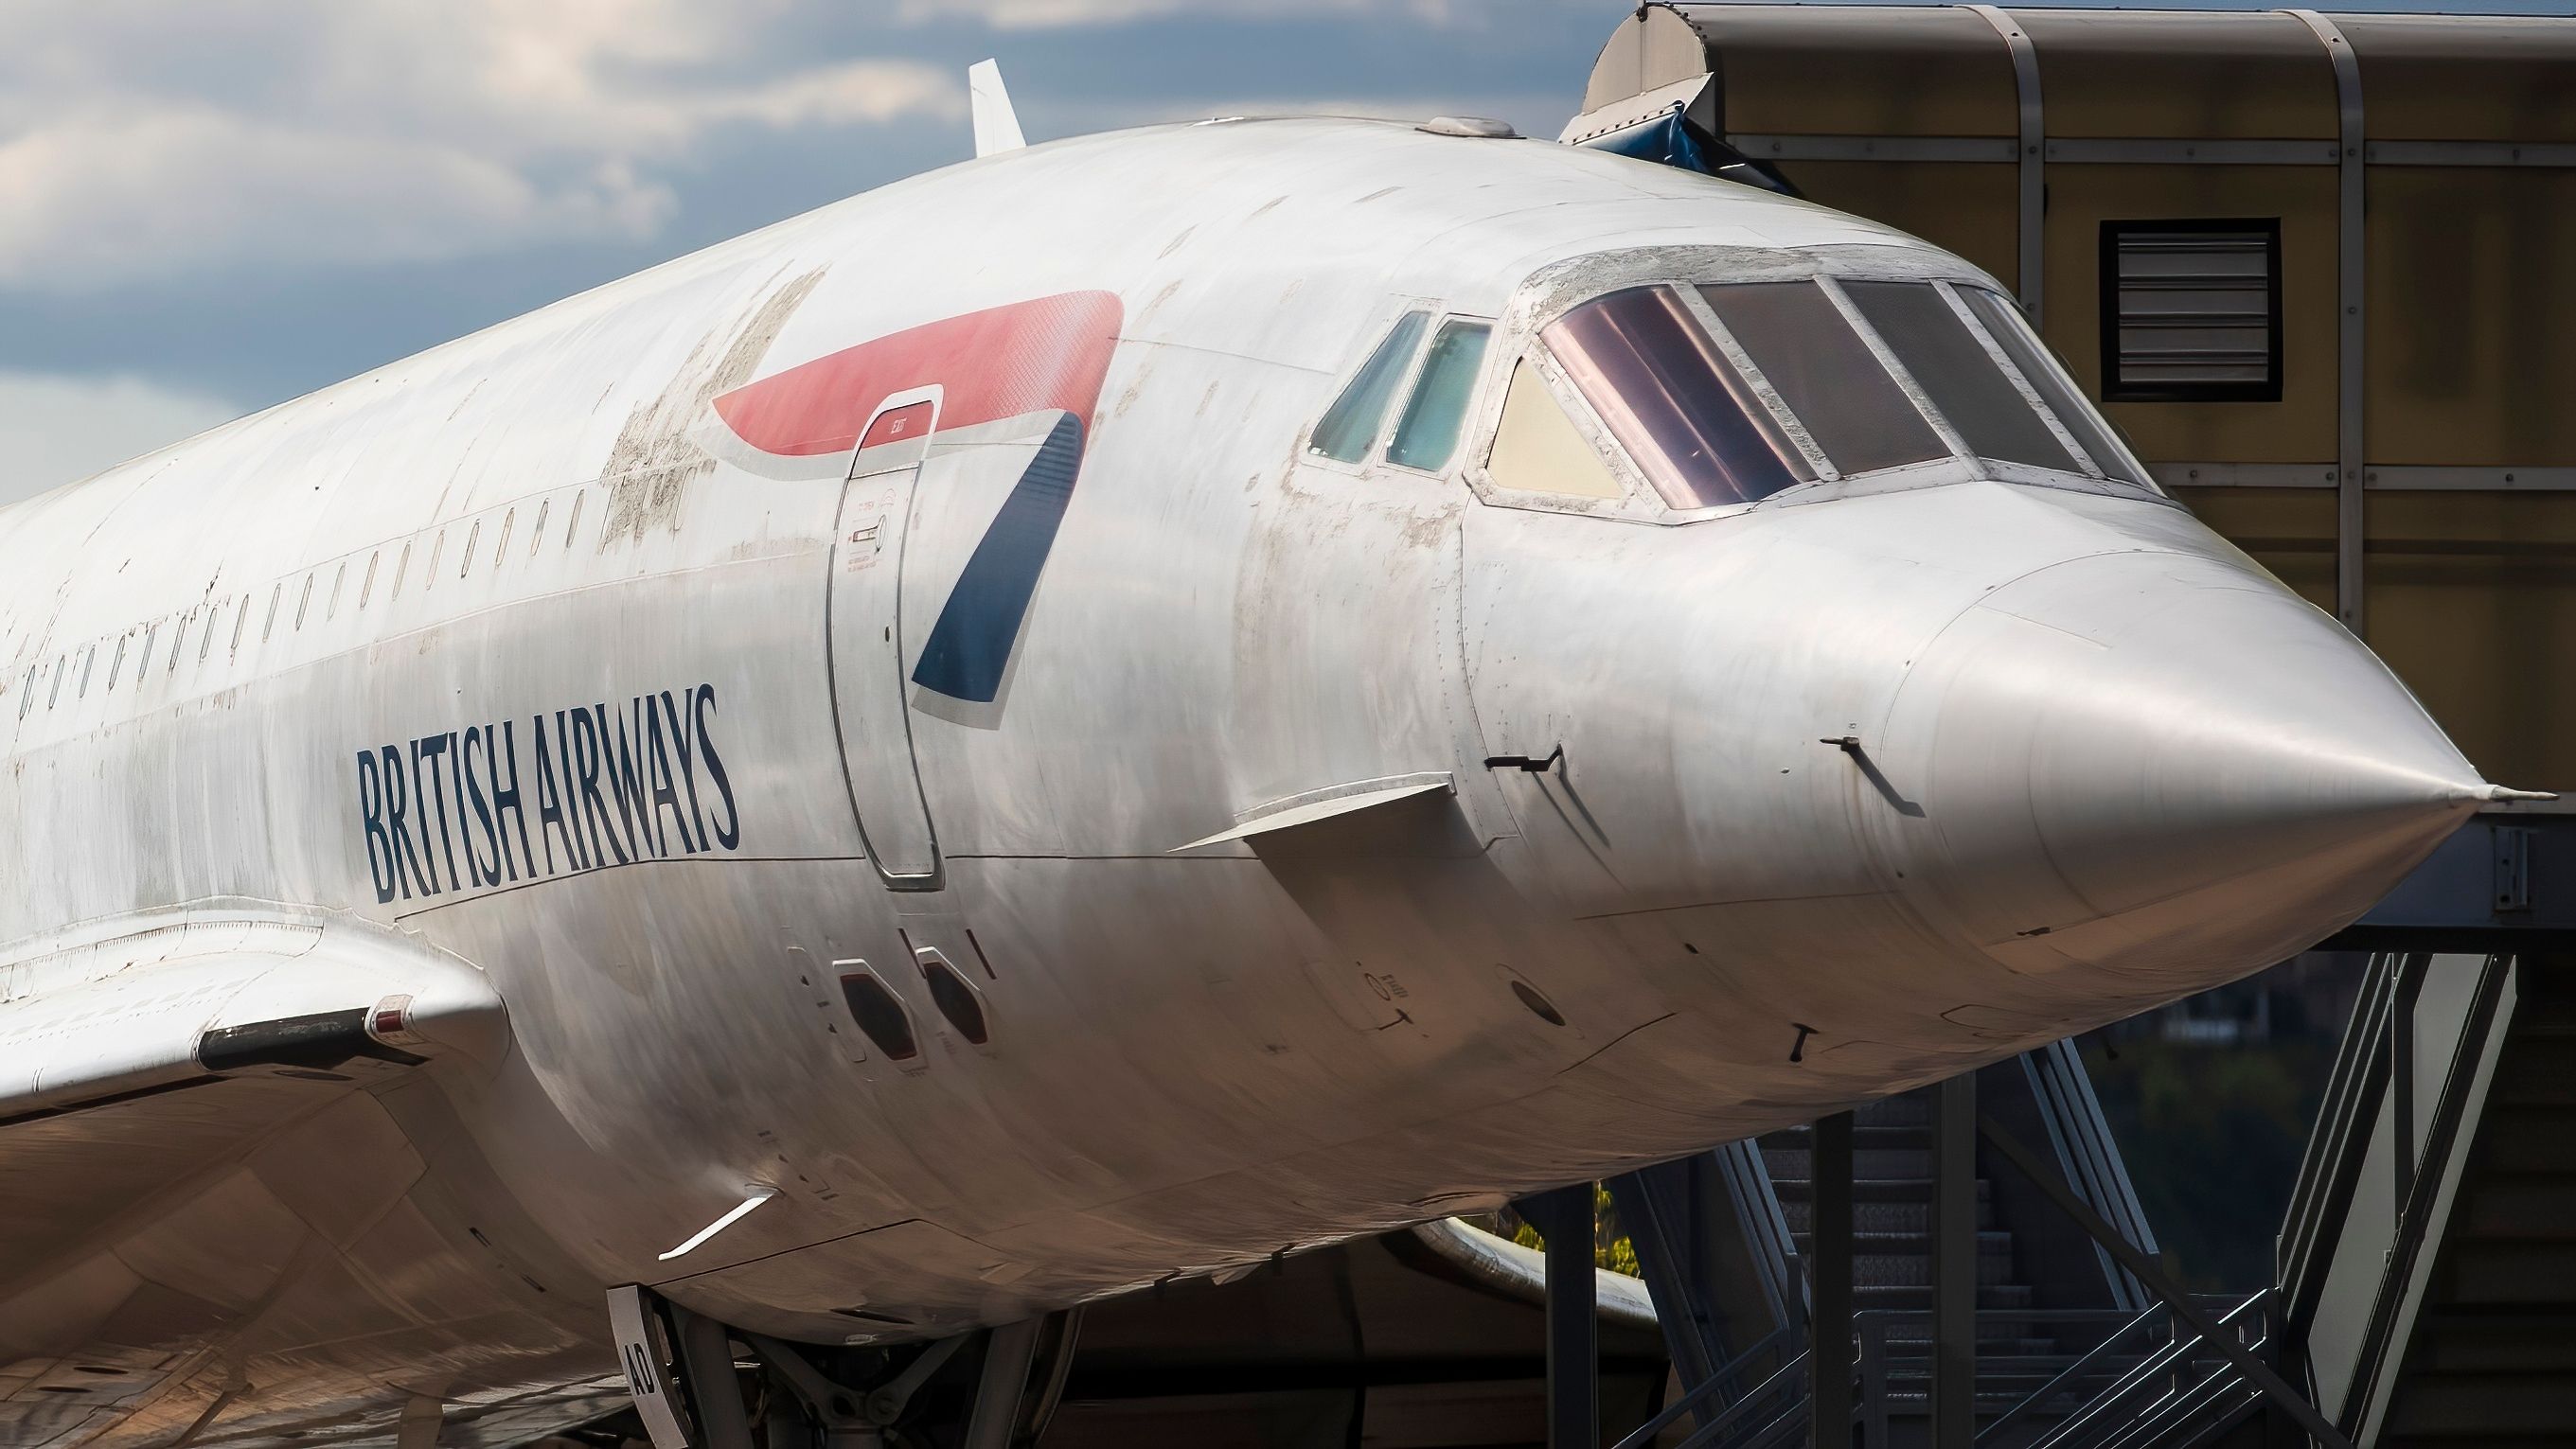 British Airways Concorde Nose Closeup